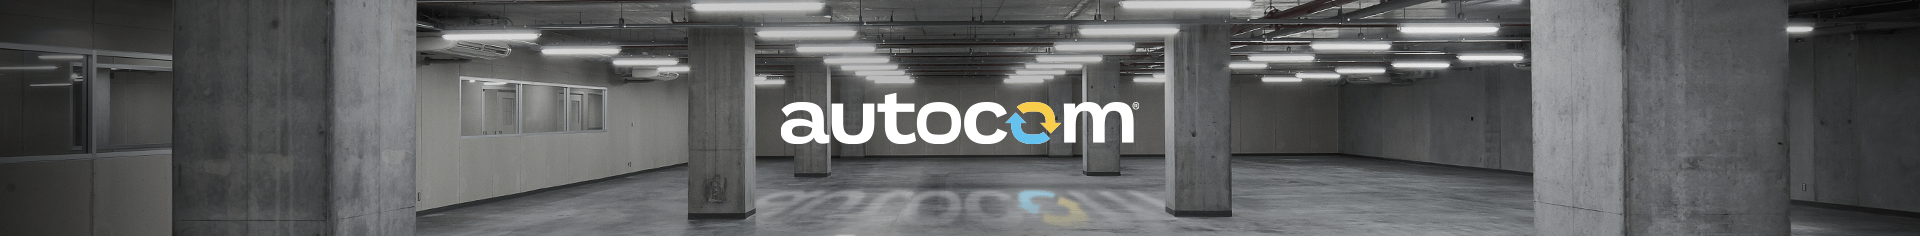 Autocom Hakkımızda